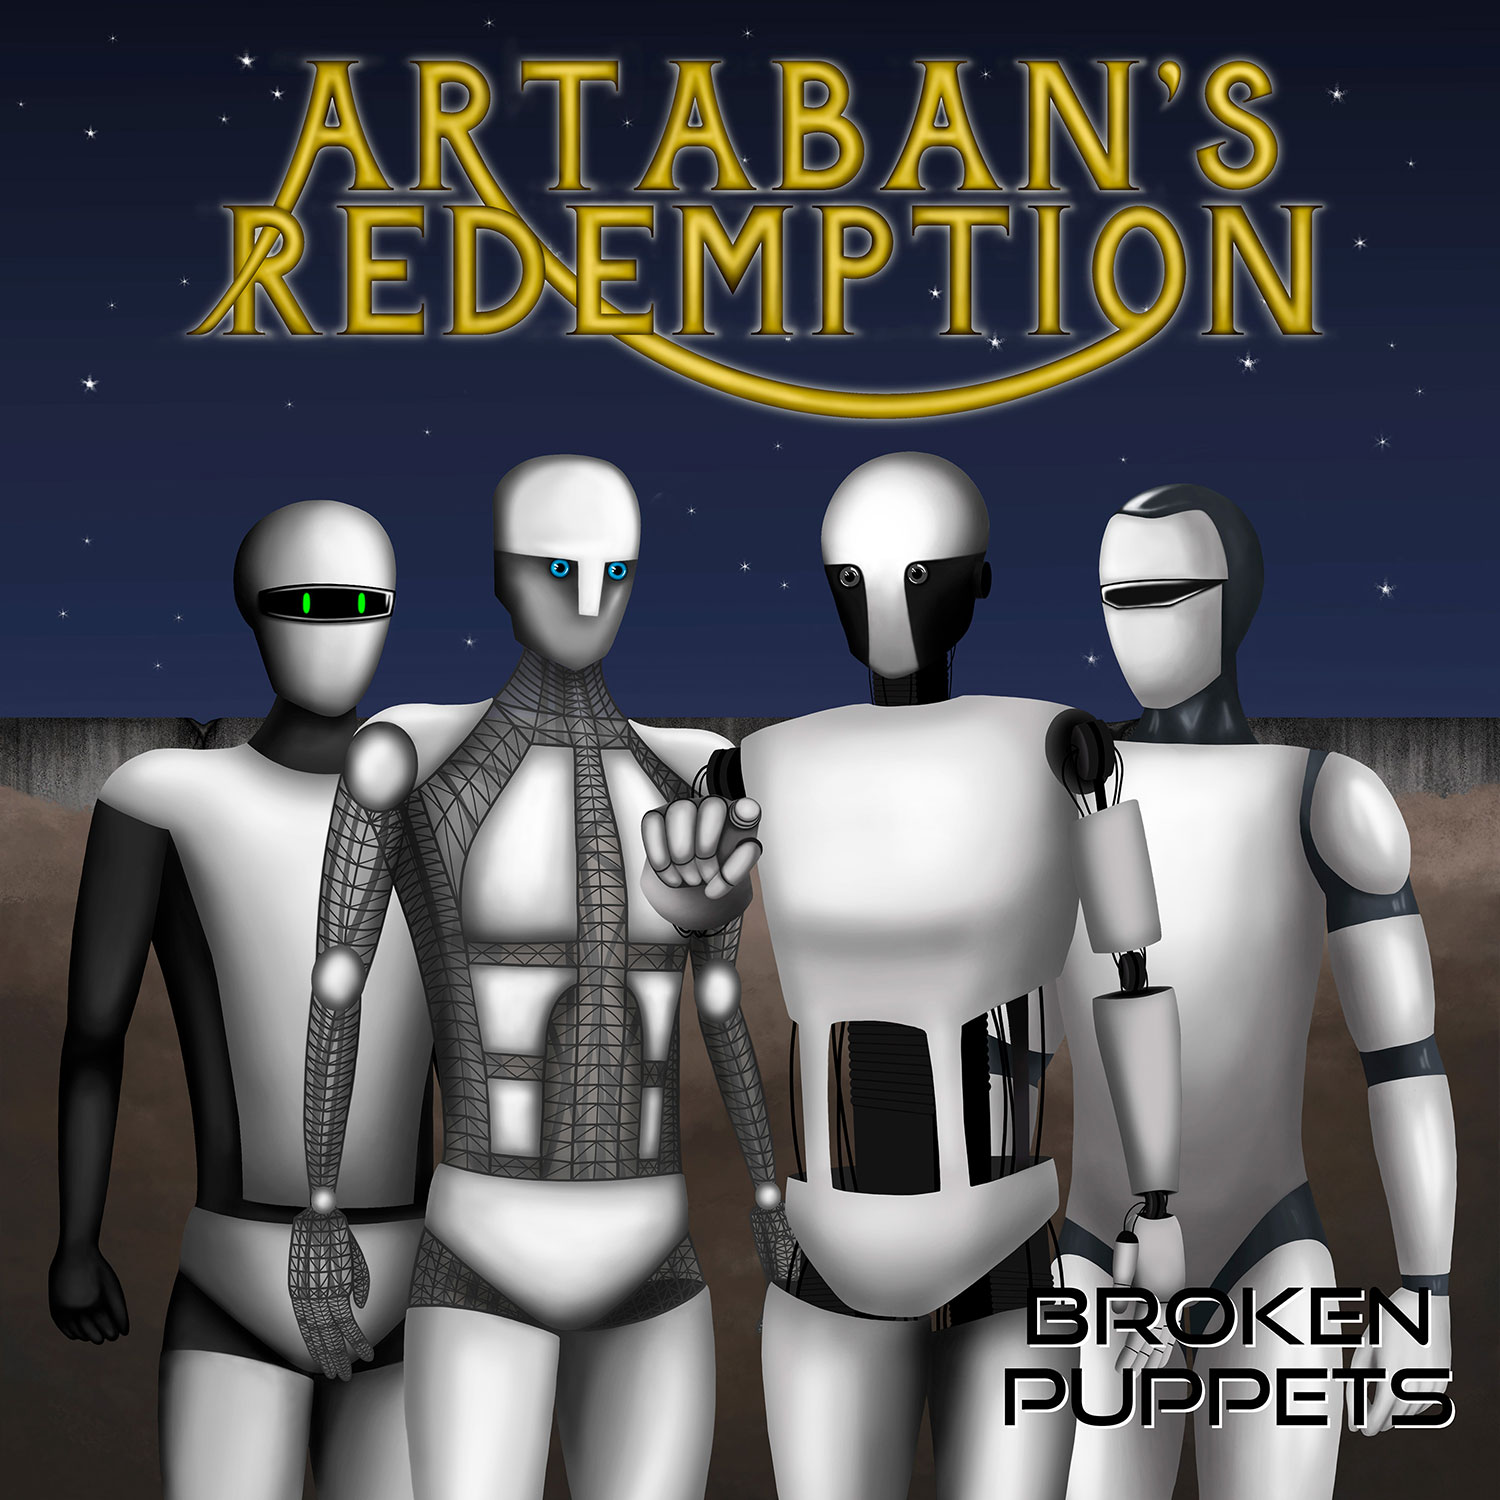 Artaban’s Redemption estrena el EP “Broken Puppets” y presenta nuevo videoclip